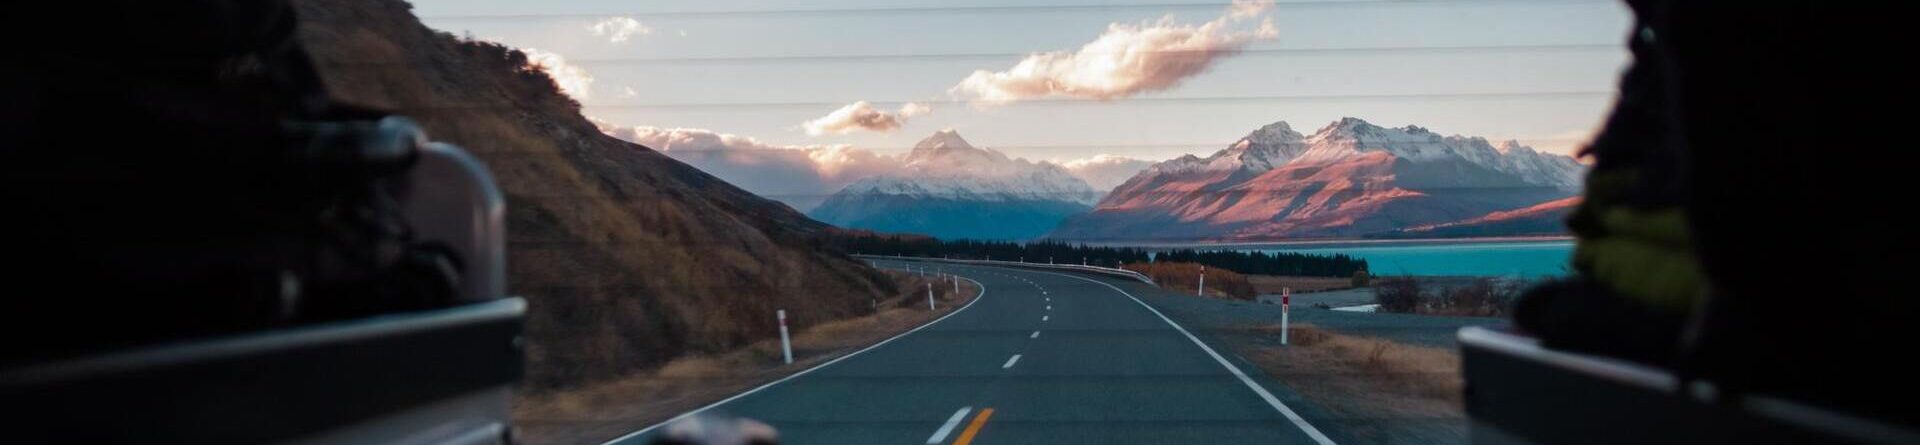 Особенности правил дорожного движения в Новой Зеландии